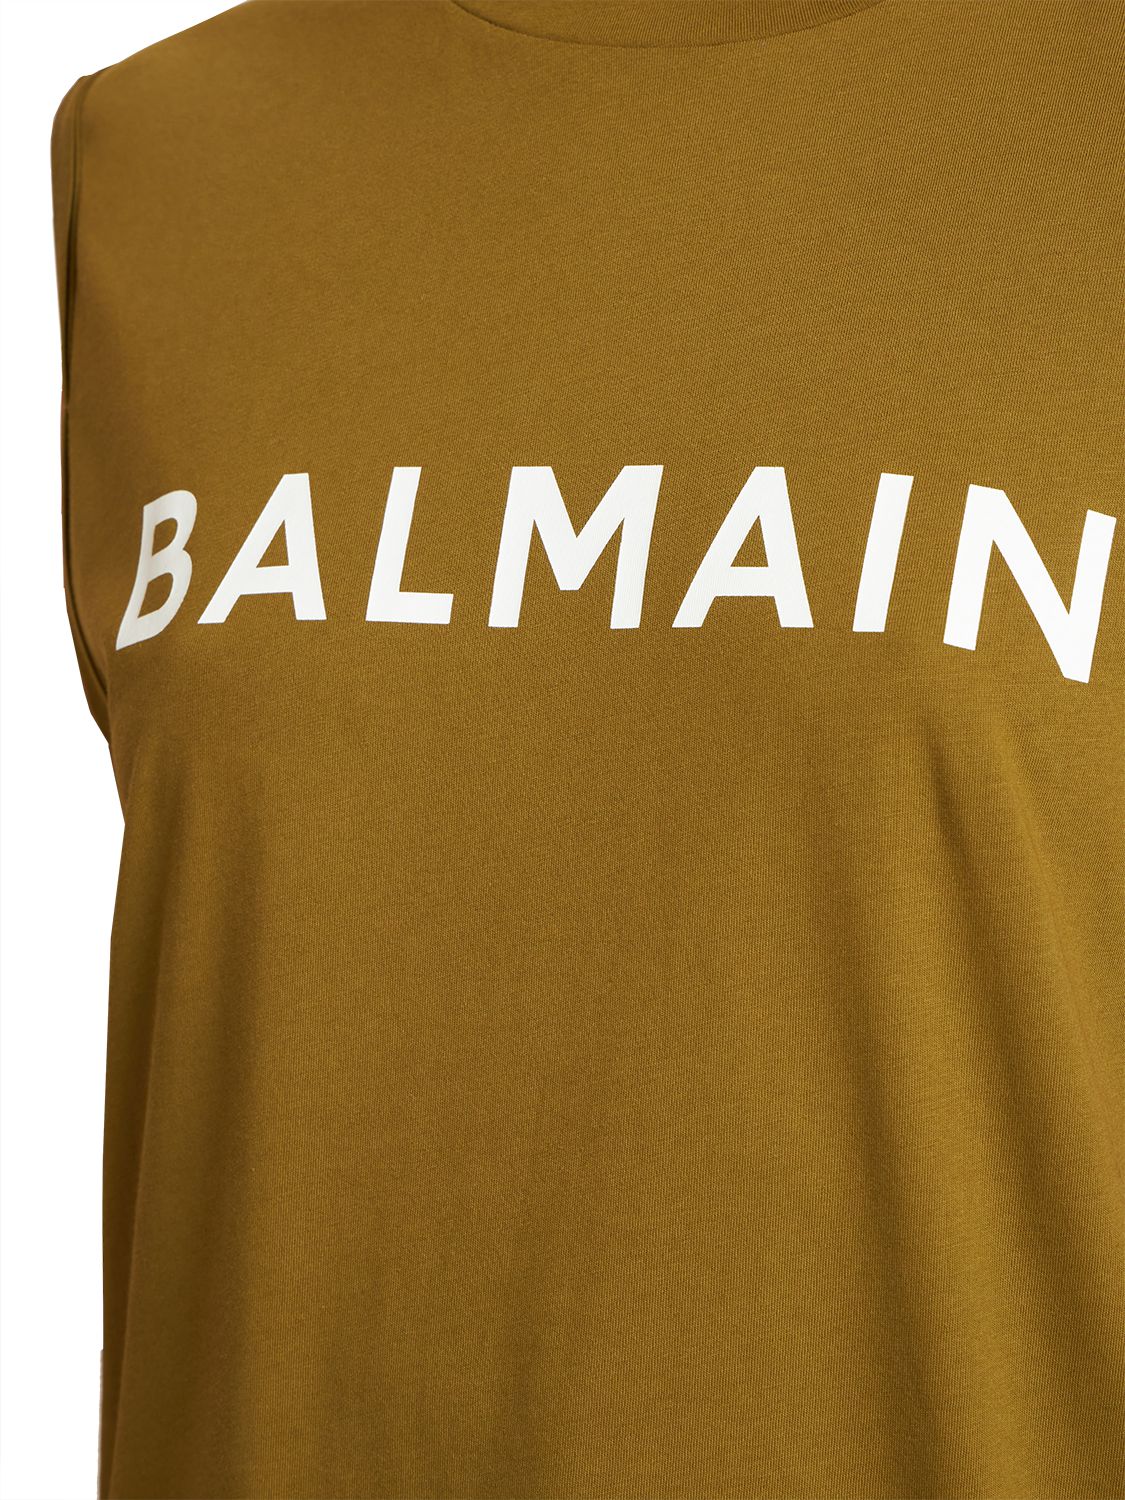 BALMAIN - Logo Cotton Tank Top